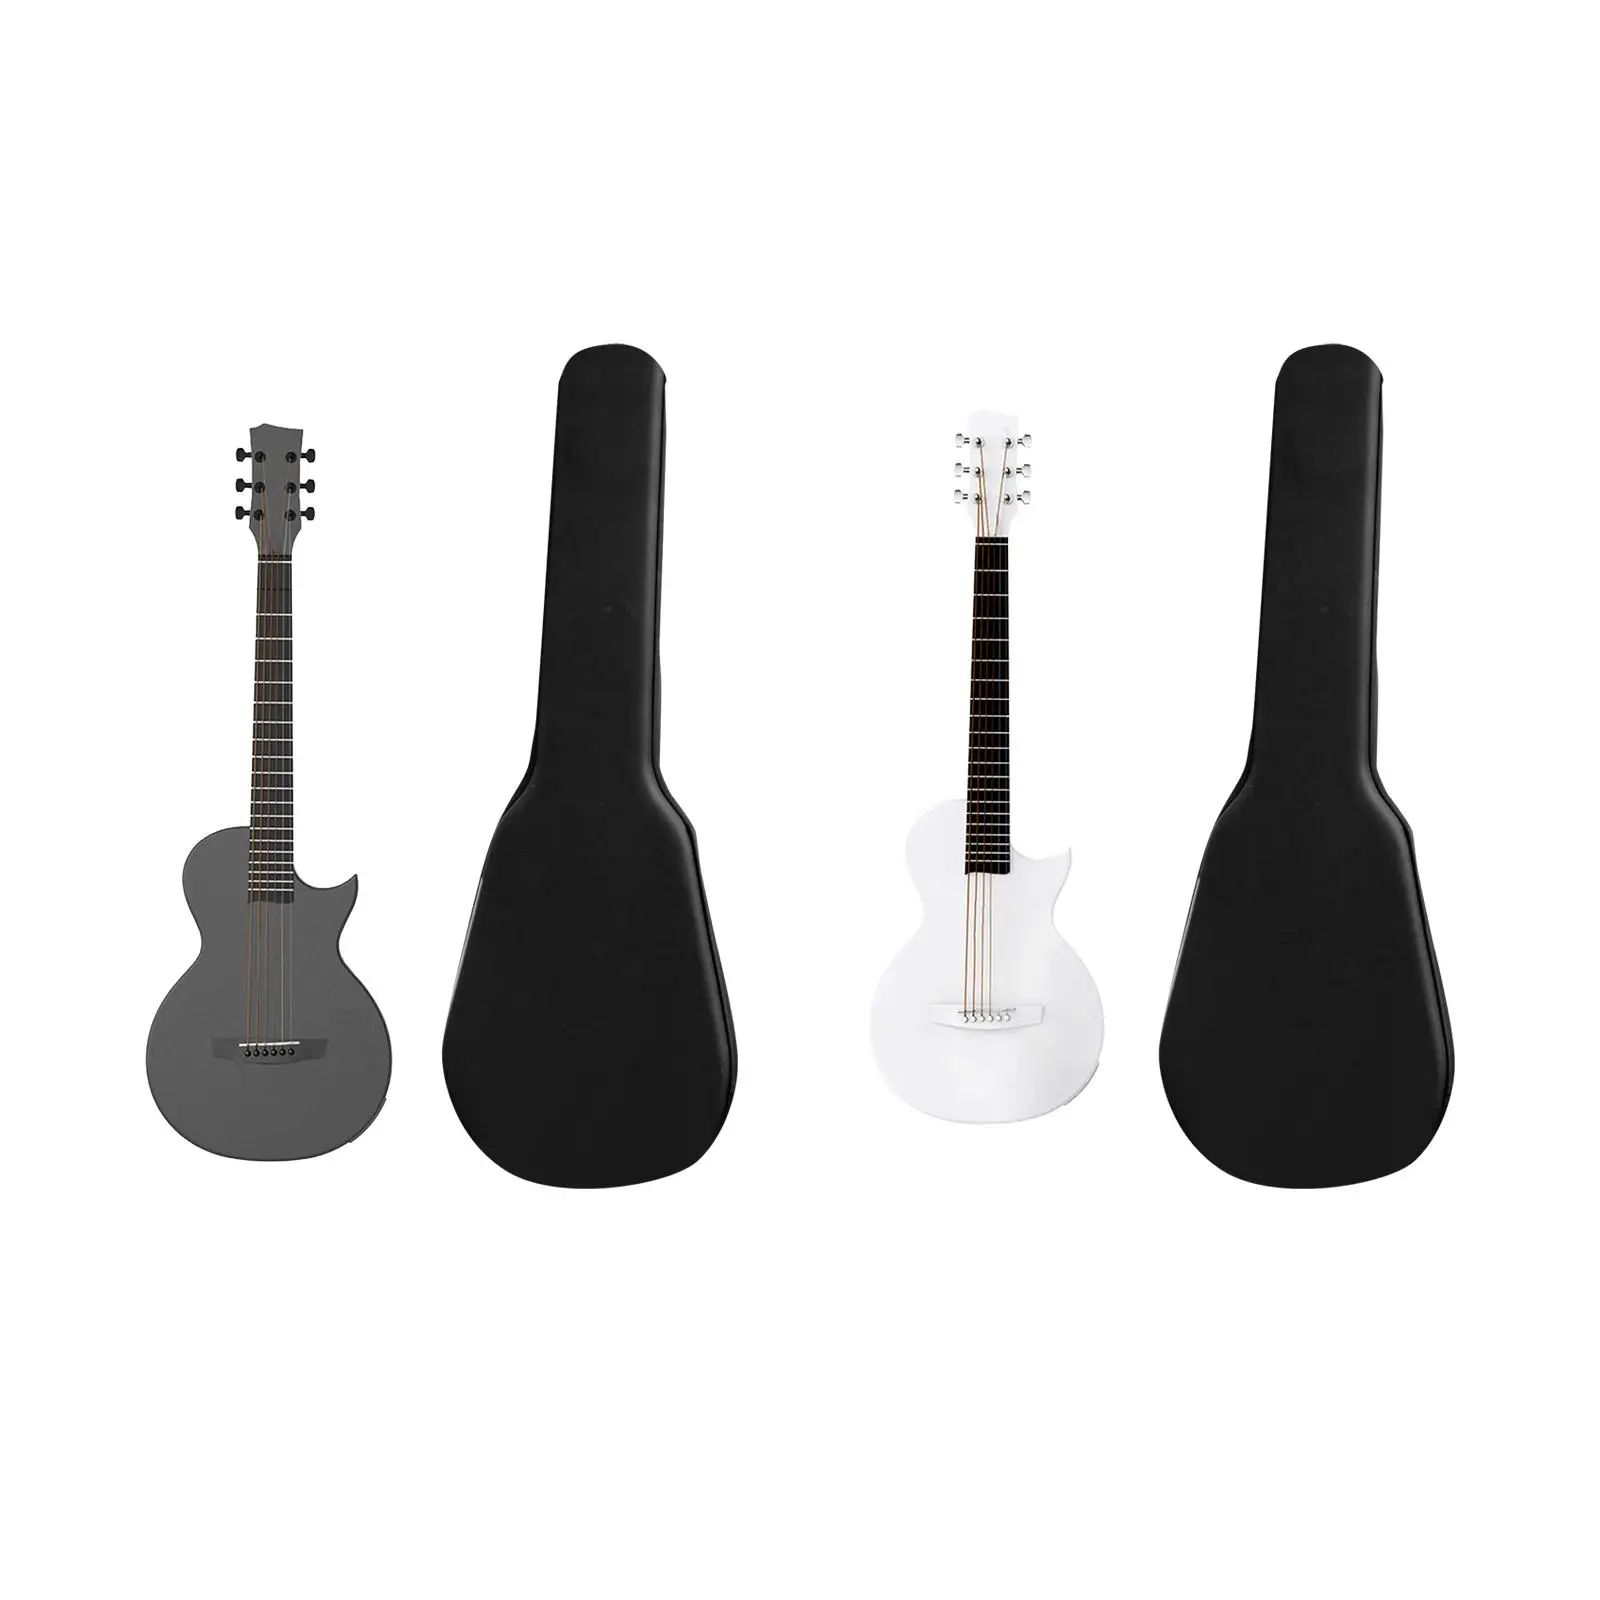 Acoustic Guitar,Acoustic Electric Guitar,35 inch Carbon Fiber,Premium